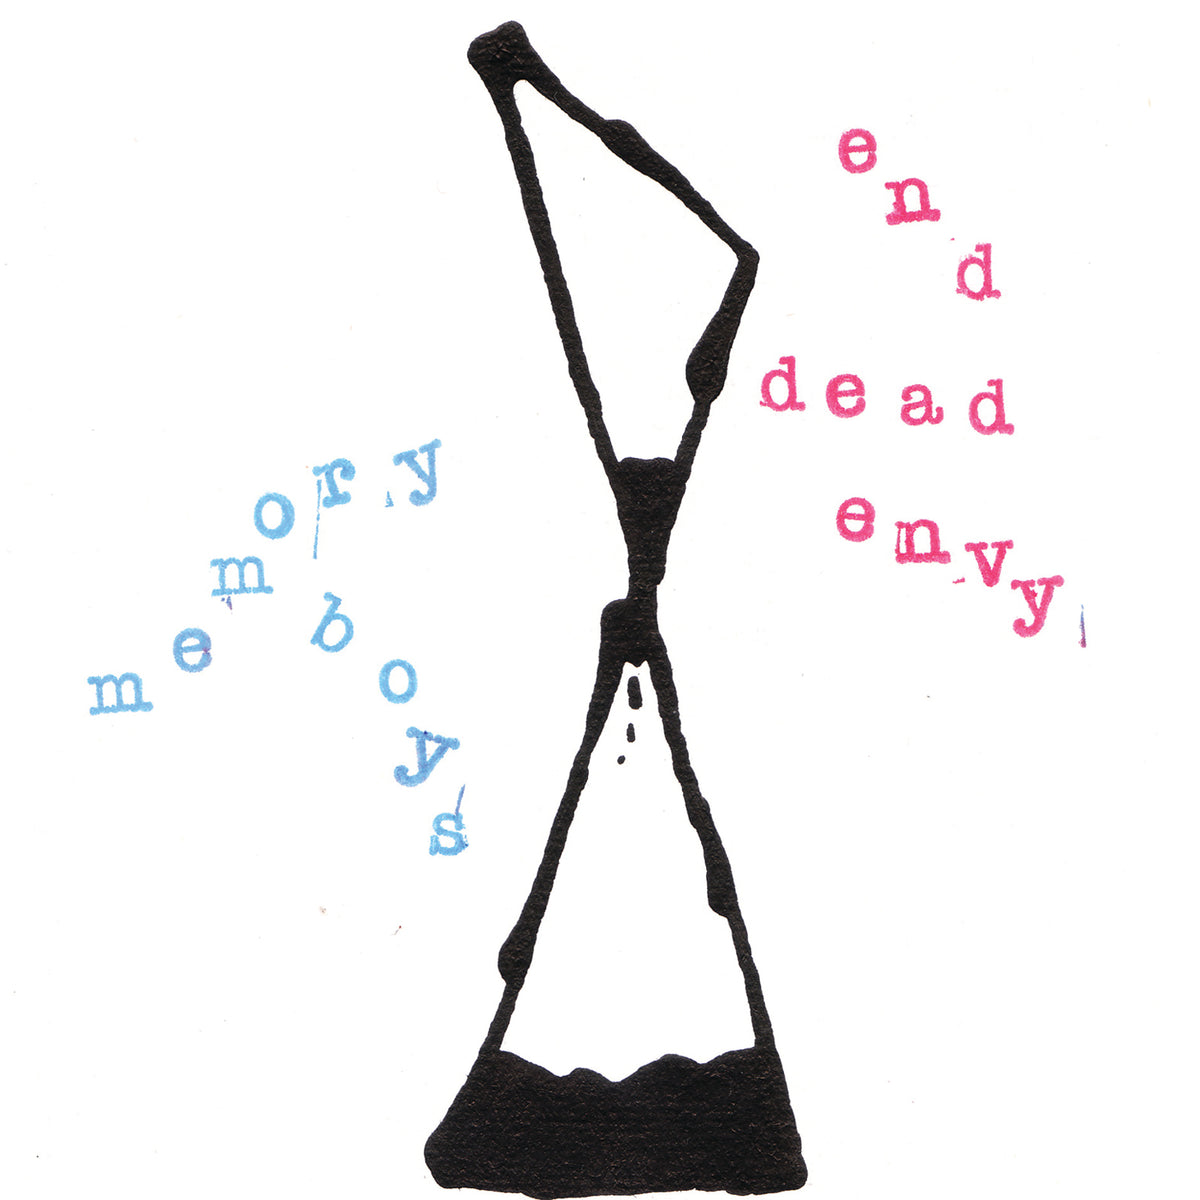 Memory Boys - End Dead Envy FTR 042